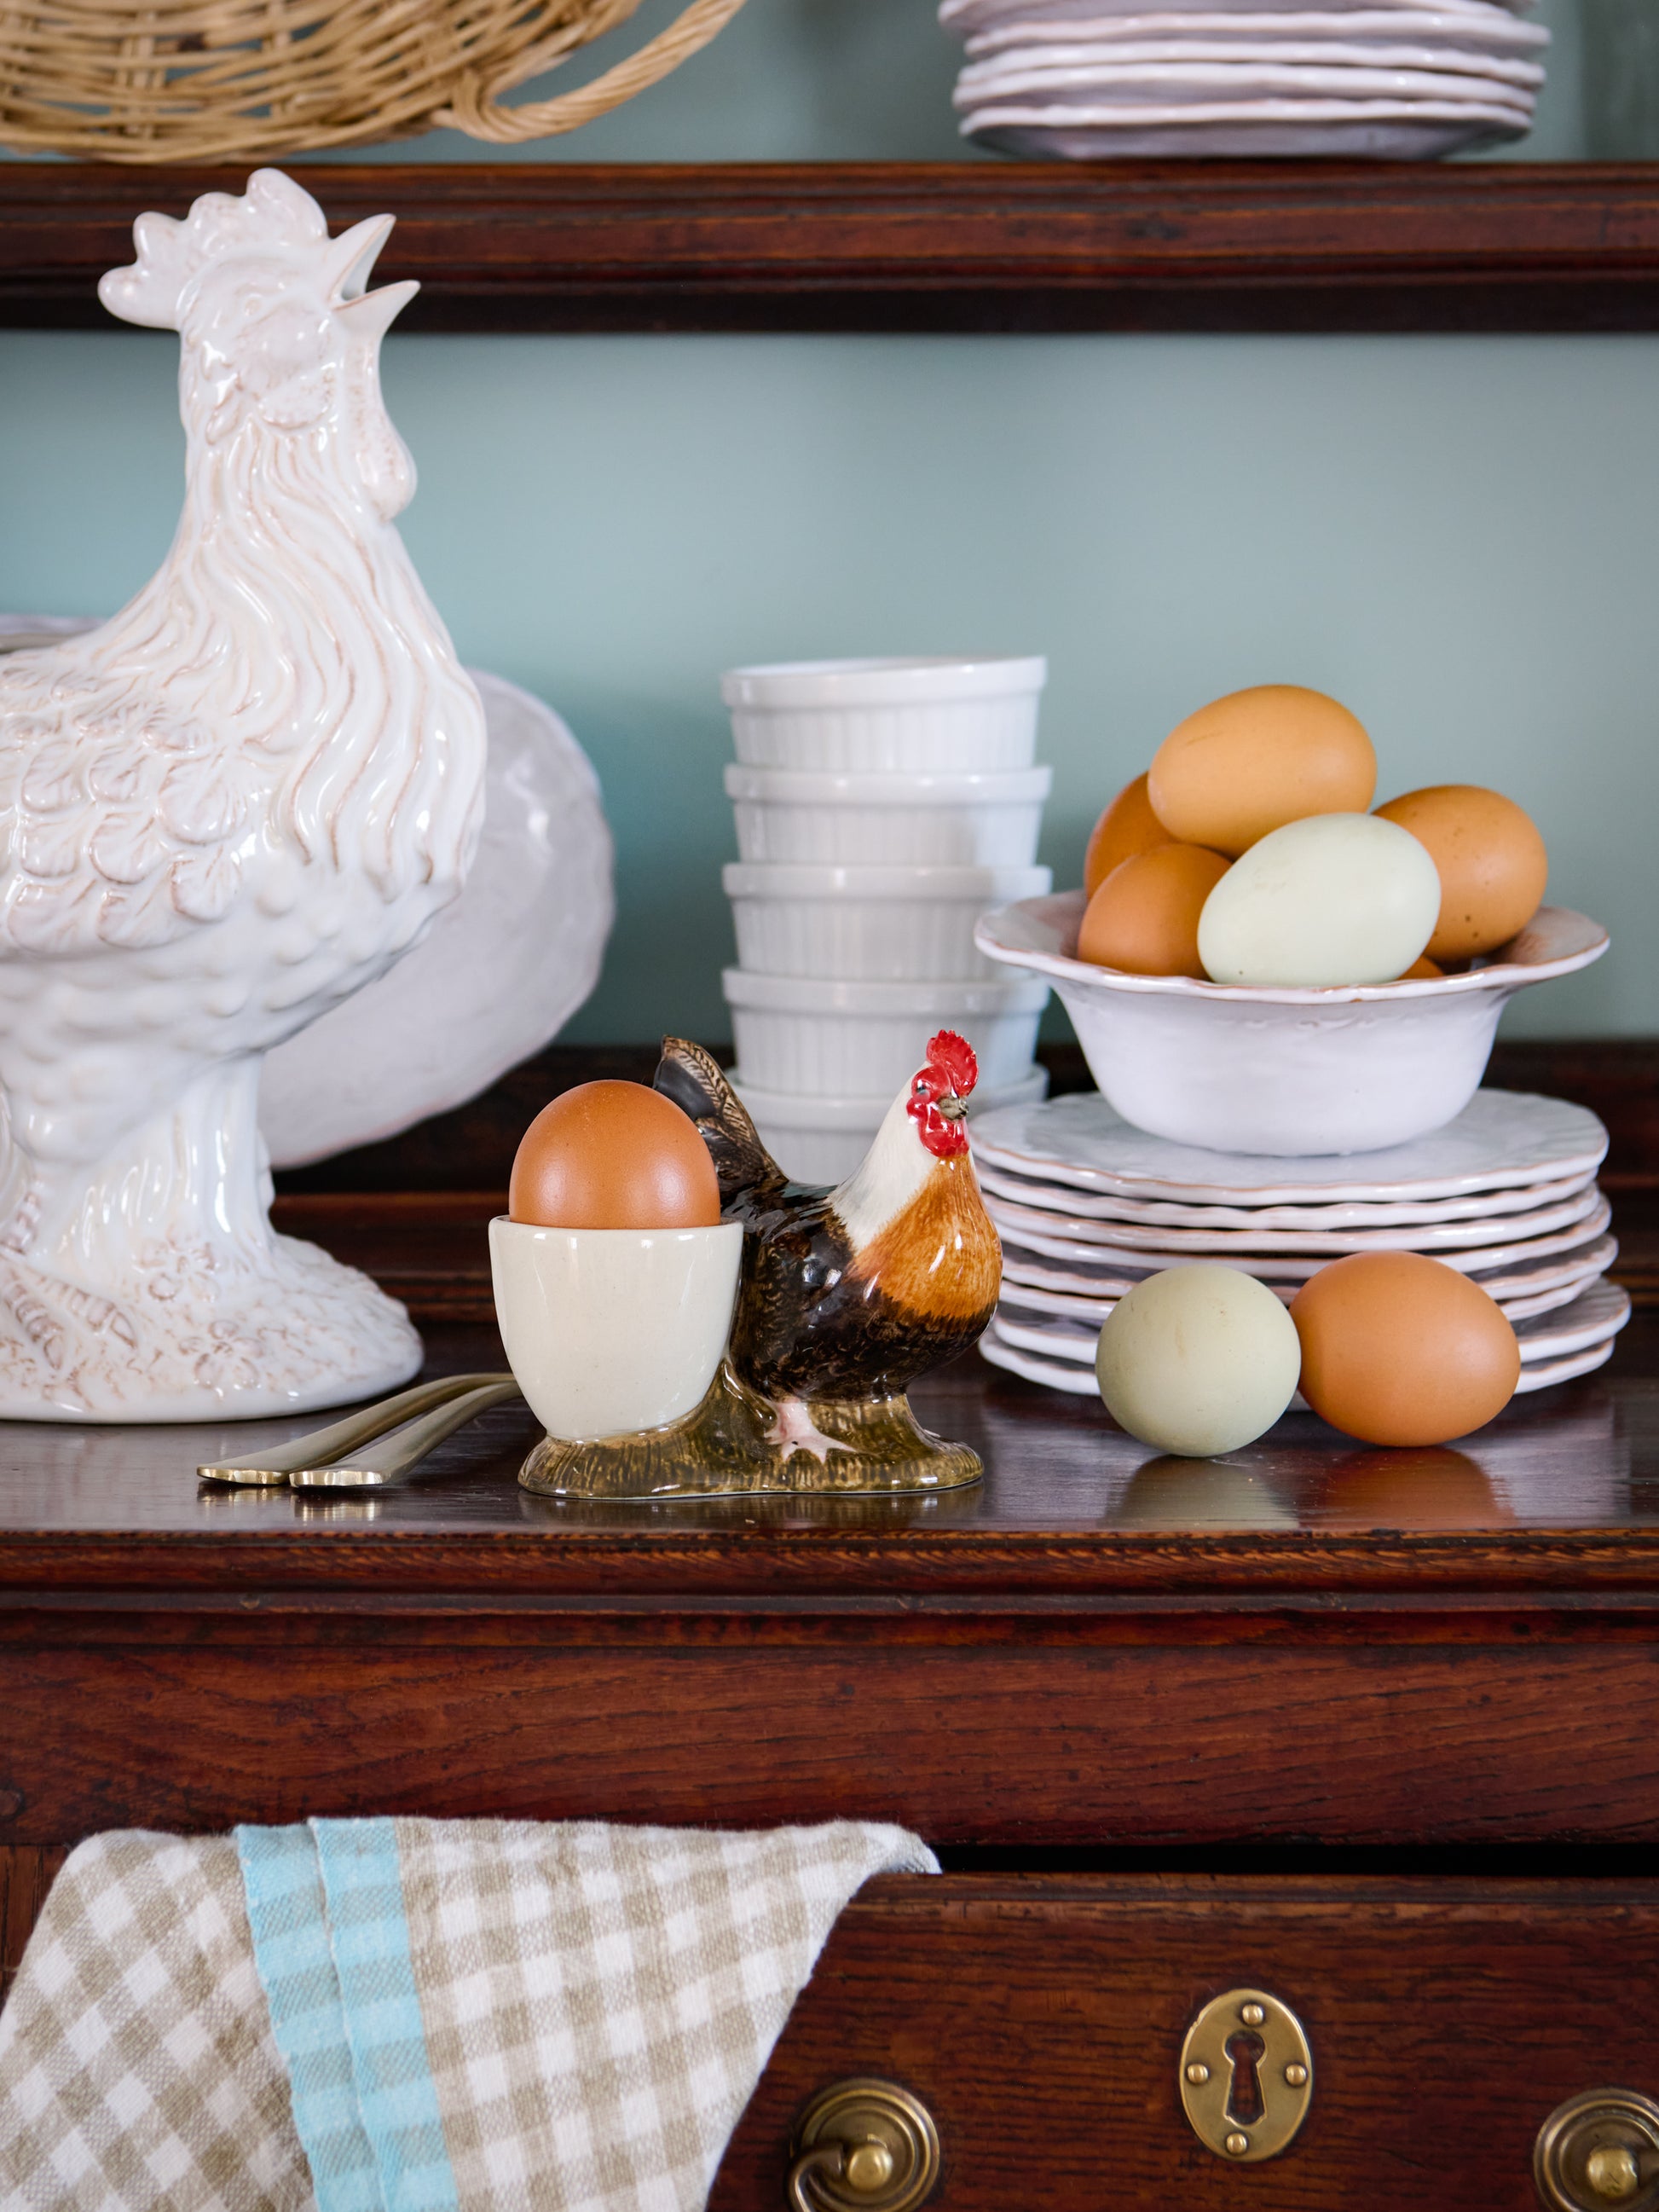 Quail Ceramics Dorking Hen Egg Cups Weston Table